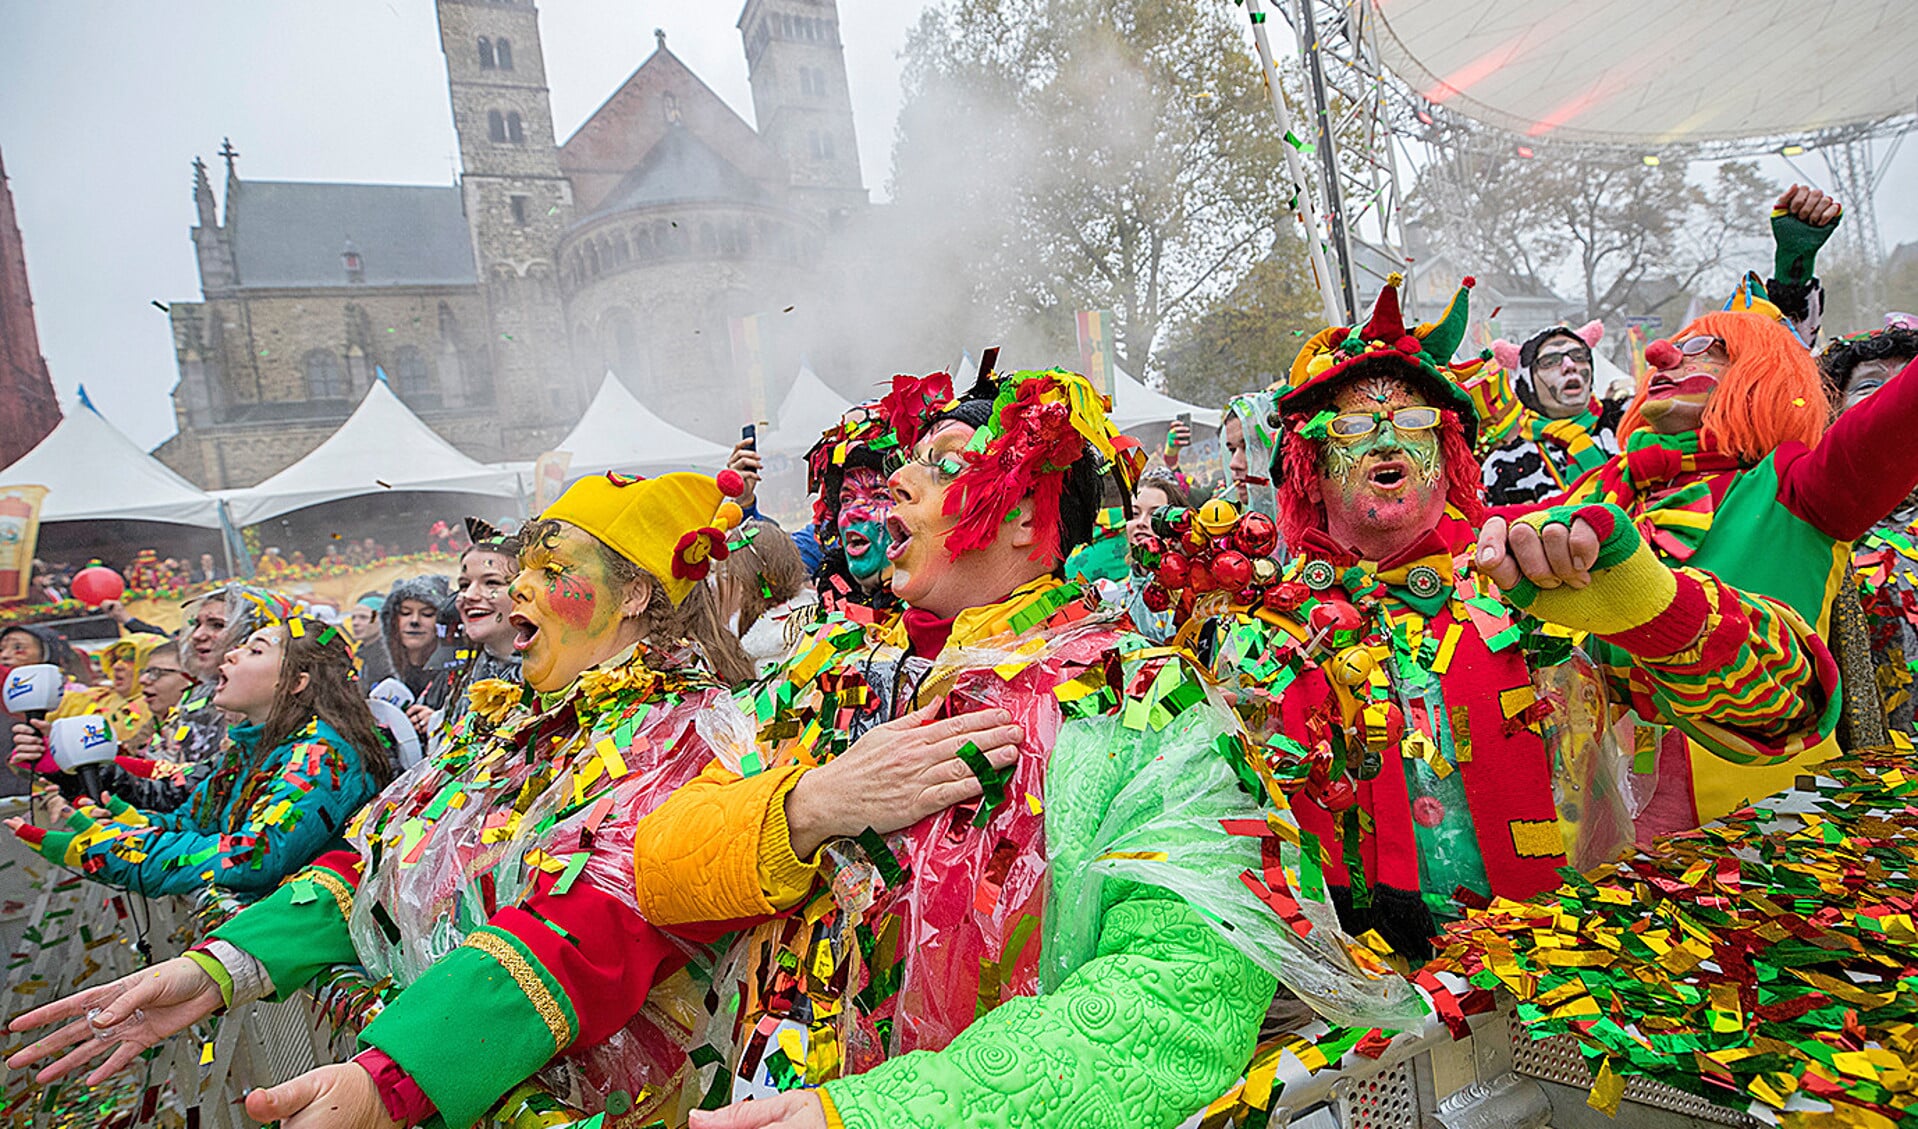 Carnavalsvierders hebben zich verkleed en vieren feest op het Vrijthof in Maastricht.